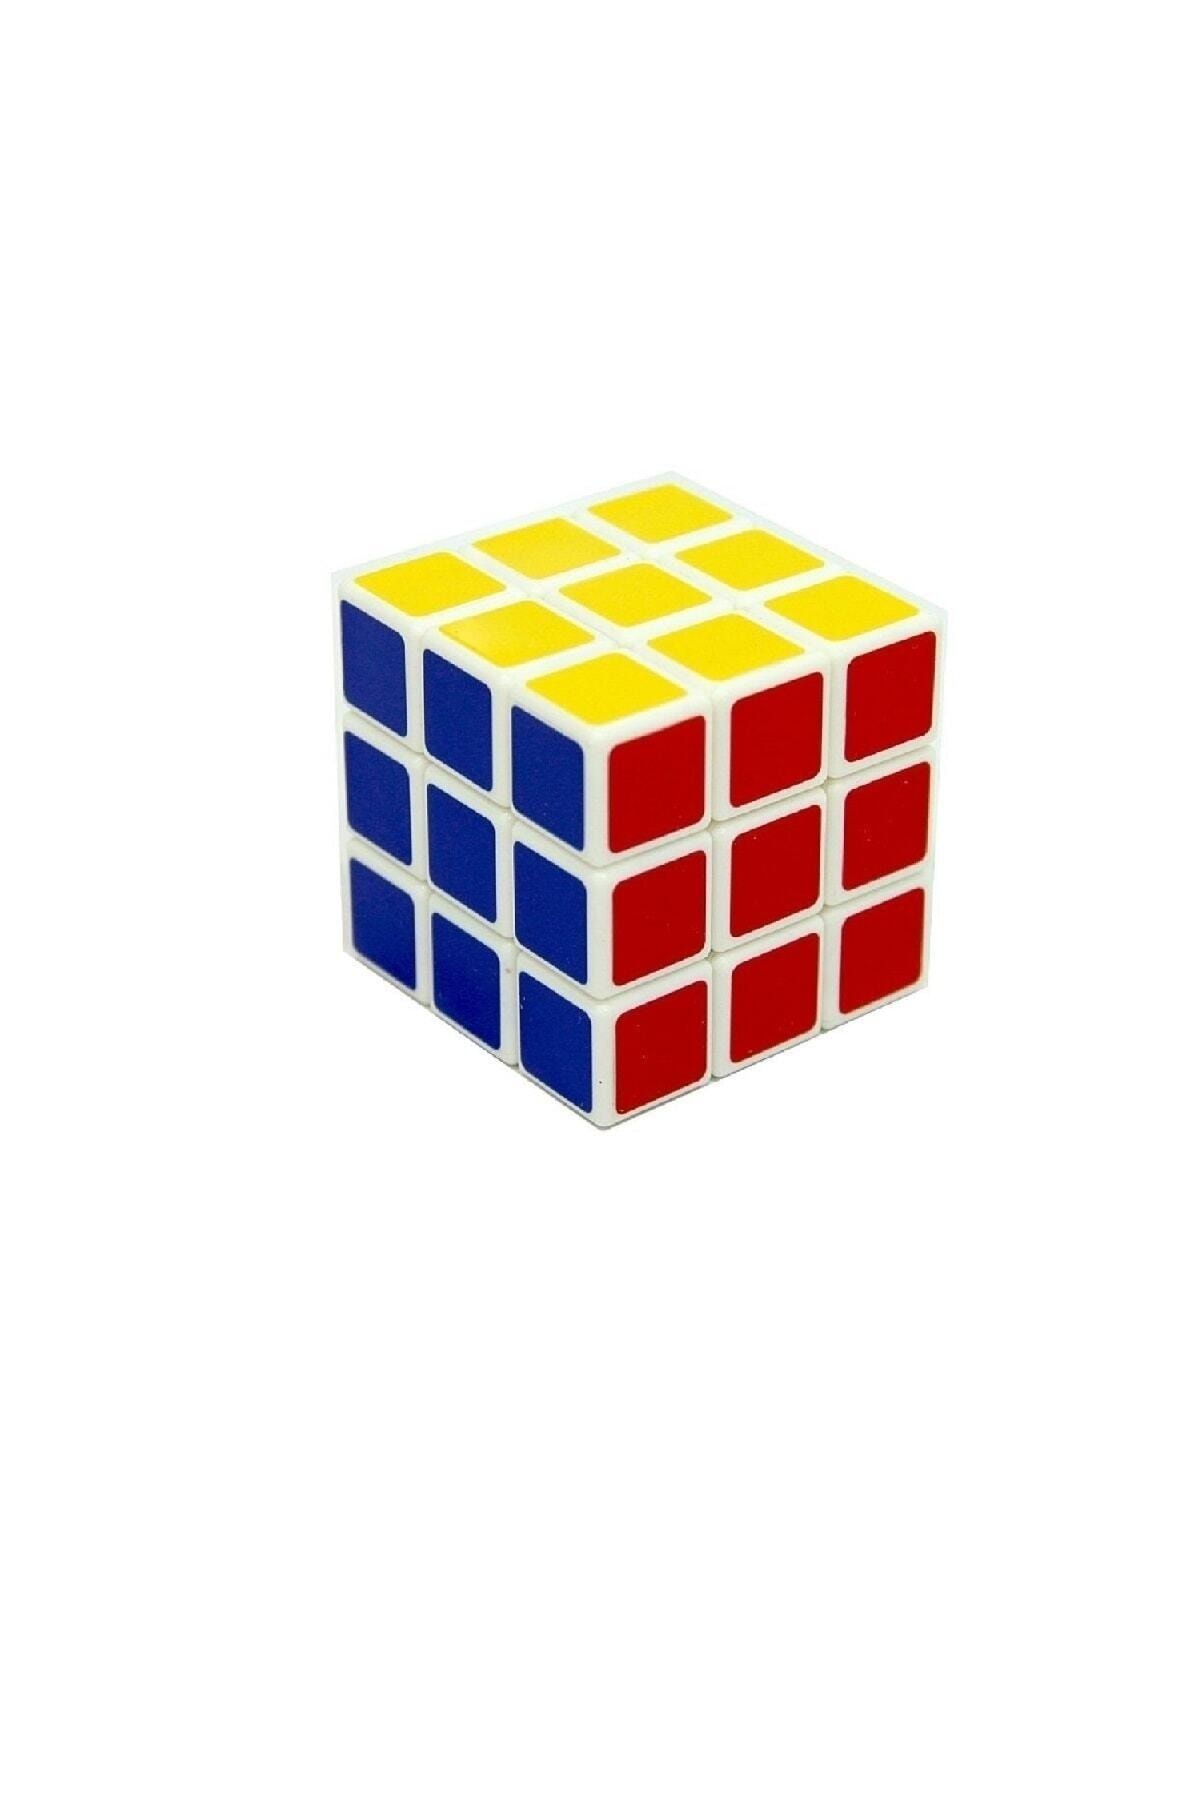 doop Zeka Küpü - A Kalite - Eğitici Oyuncak - Rubik Küp